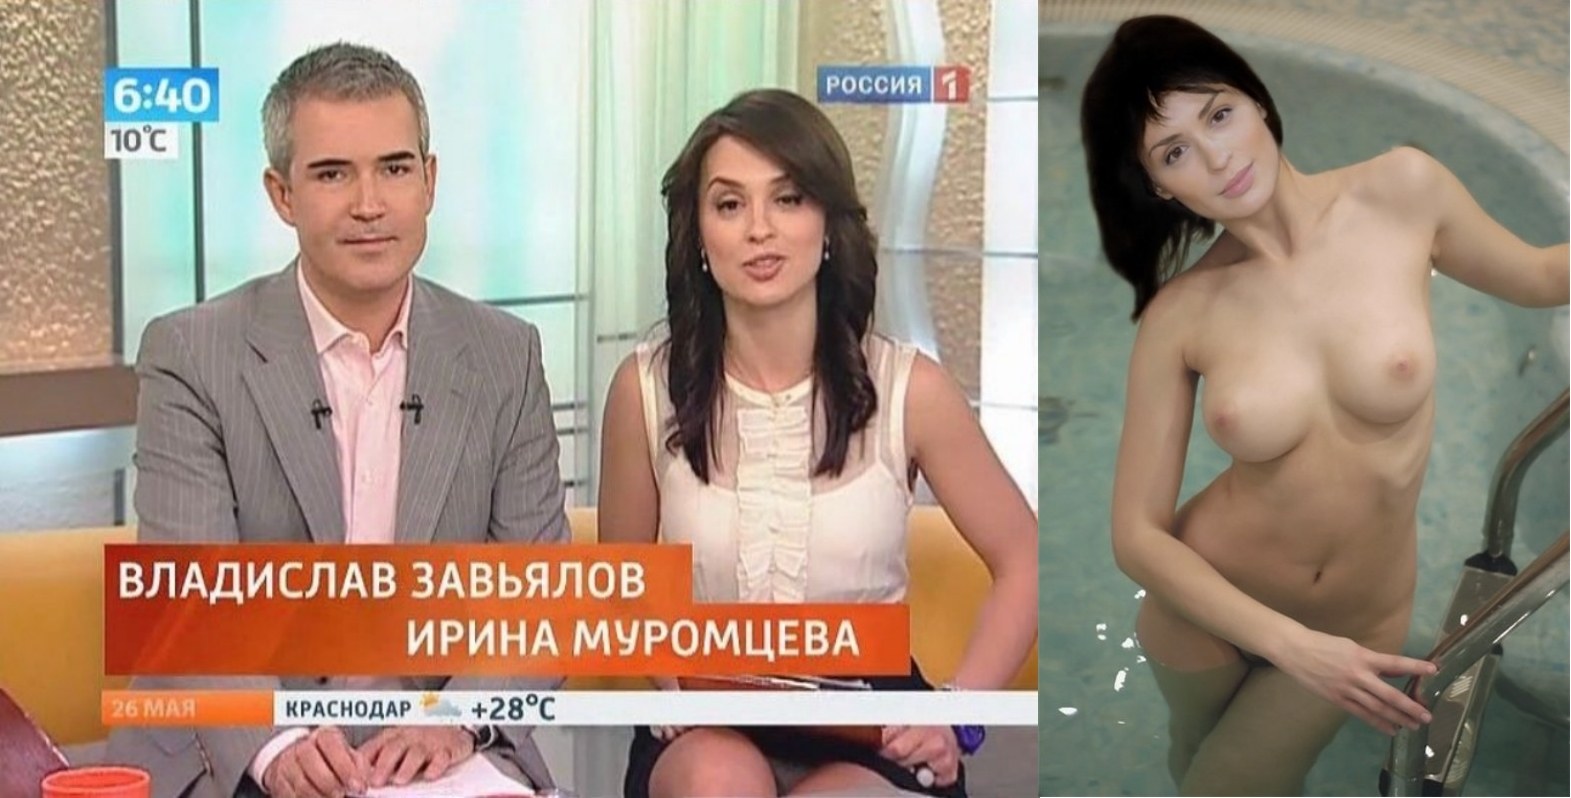 эротика российское телевидение фото 59